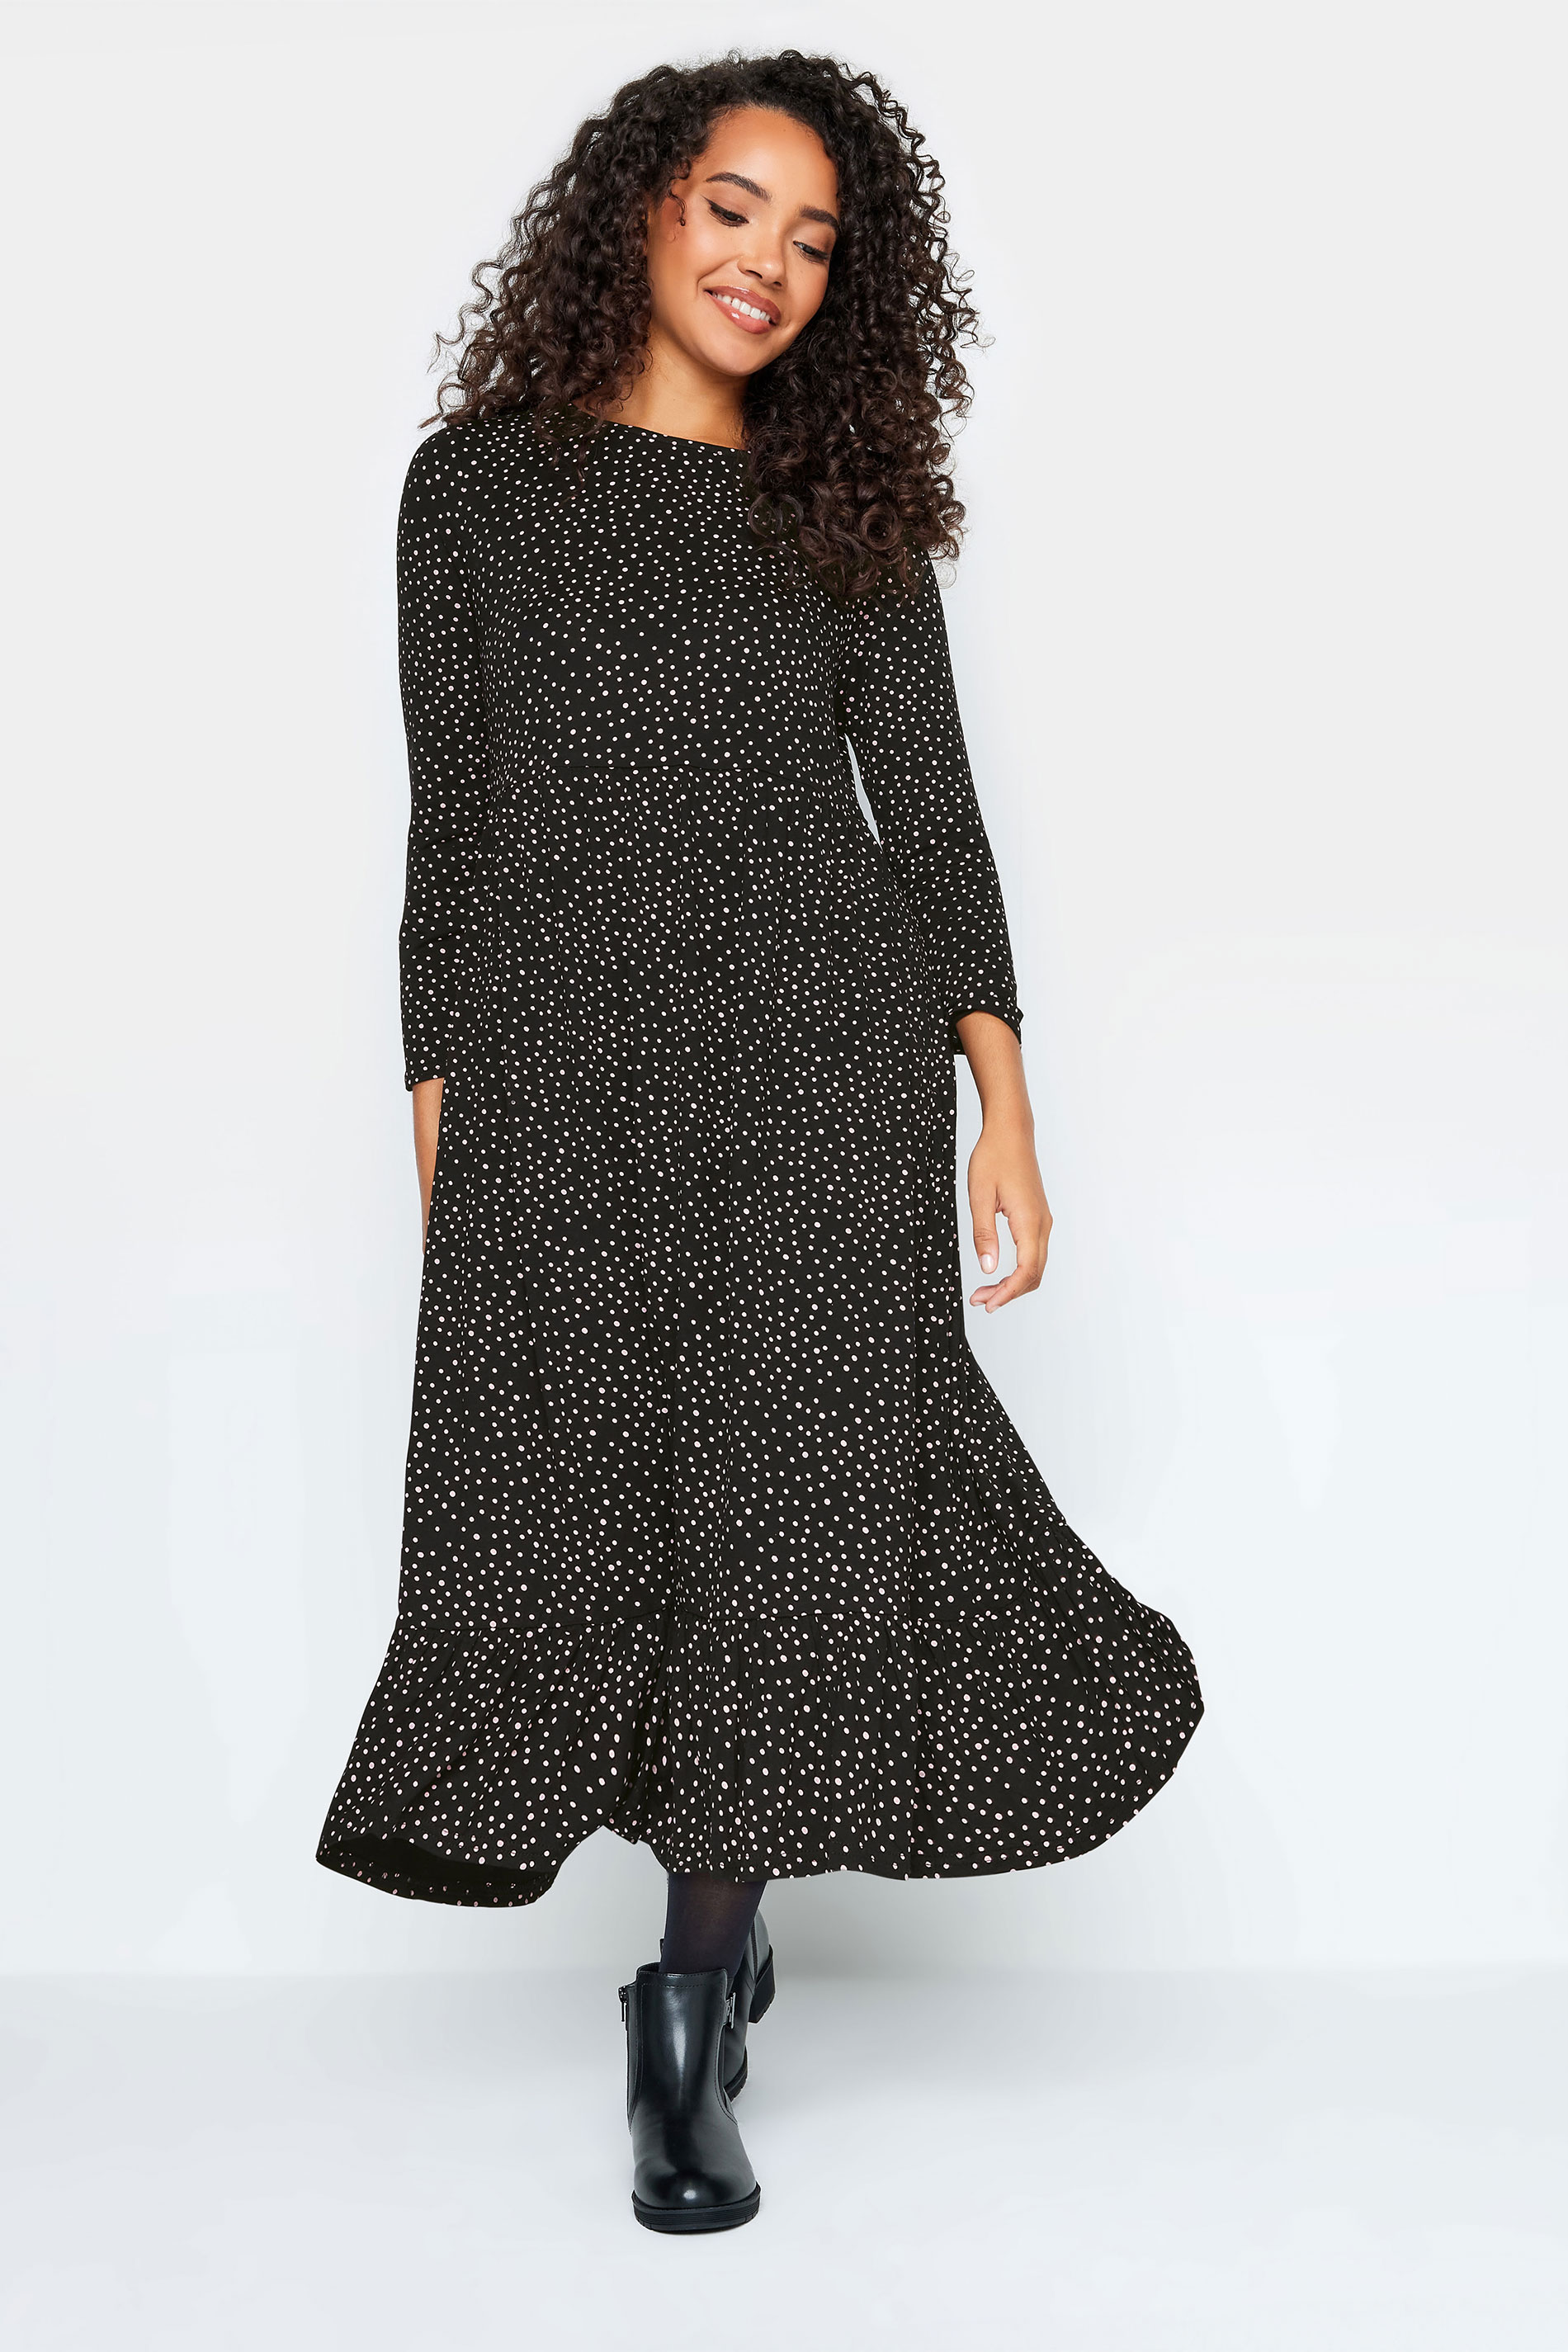 M&Co Petite Black Spot Print Midi Dress | M&Co 1